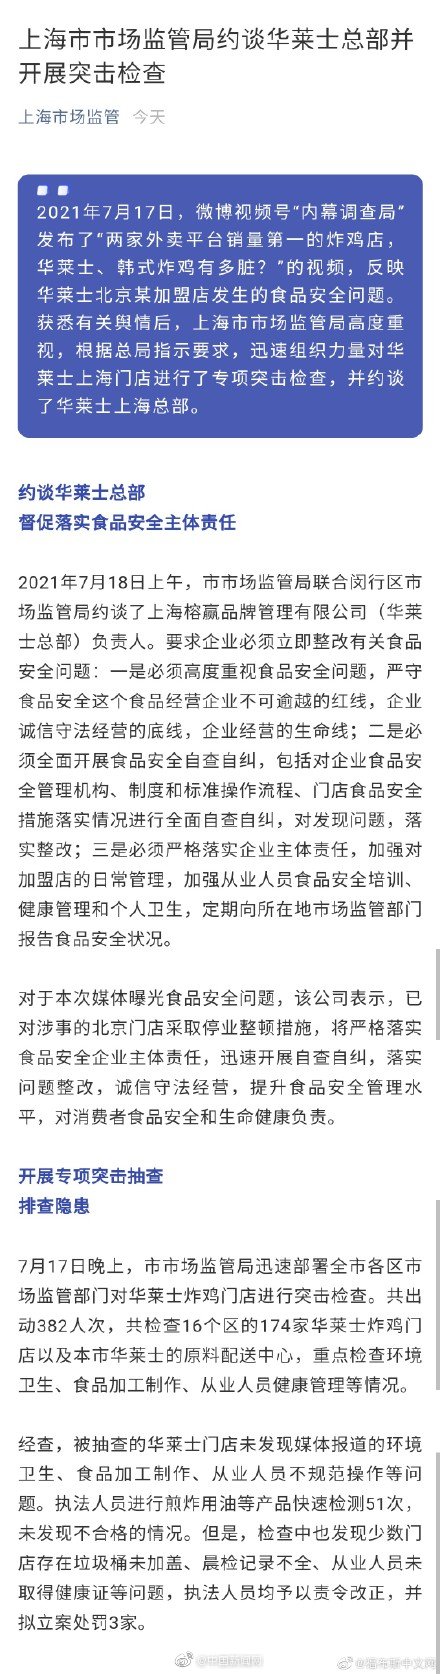 上海市监局拟立案处罚3家华莱士门店